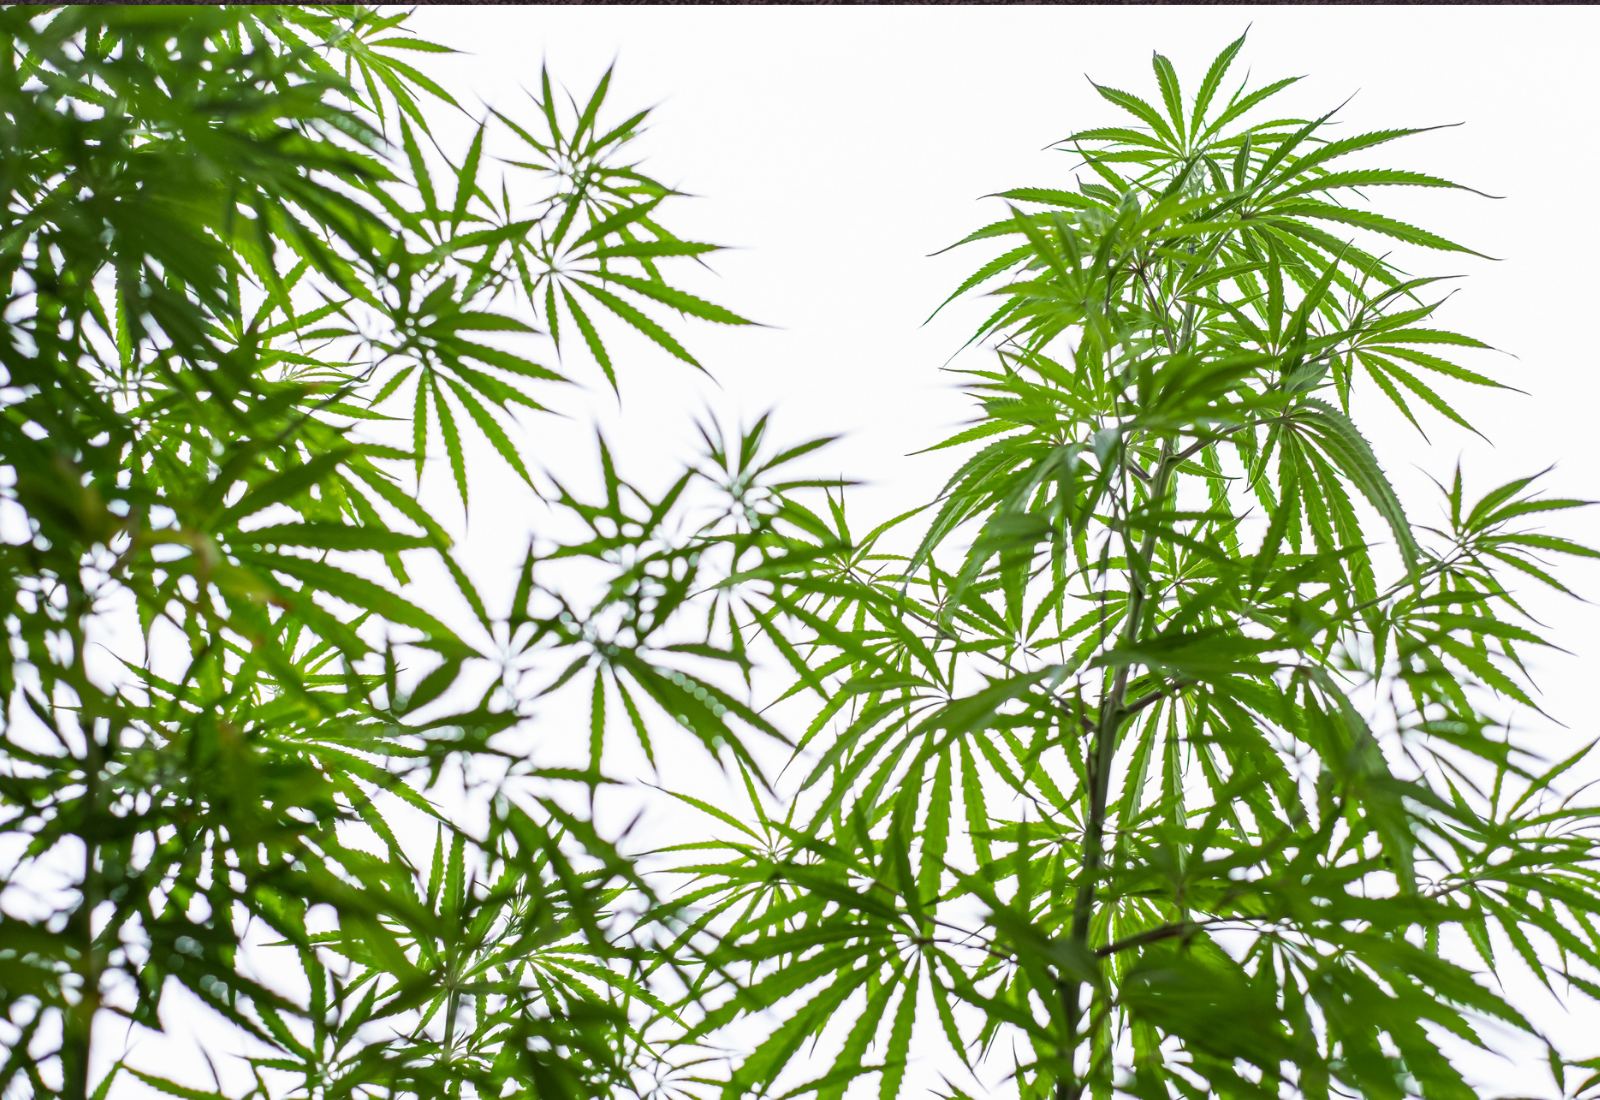 moratoria de licencias de cannabis en oregón